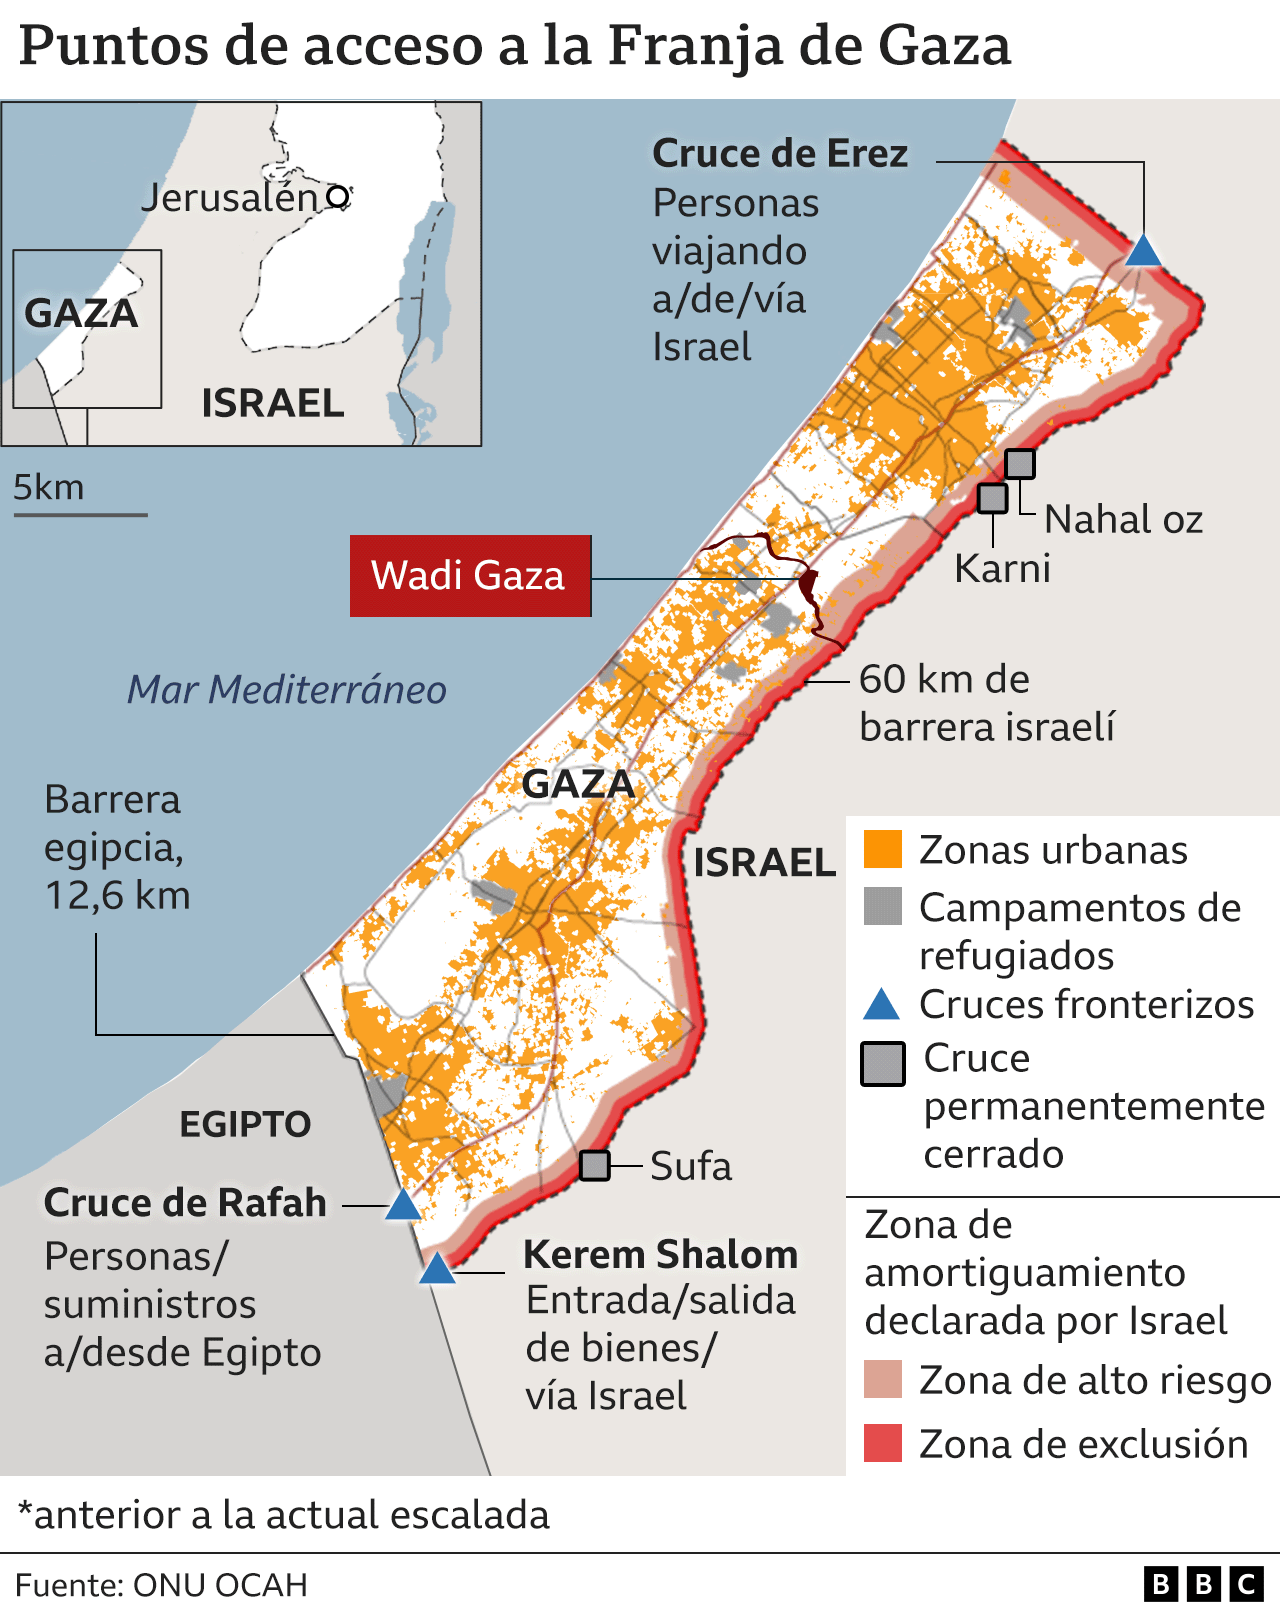 Mapa de la Franja de Gaza con los puntos de acceso y Wadi Gaza resaltado